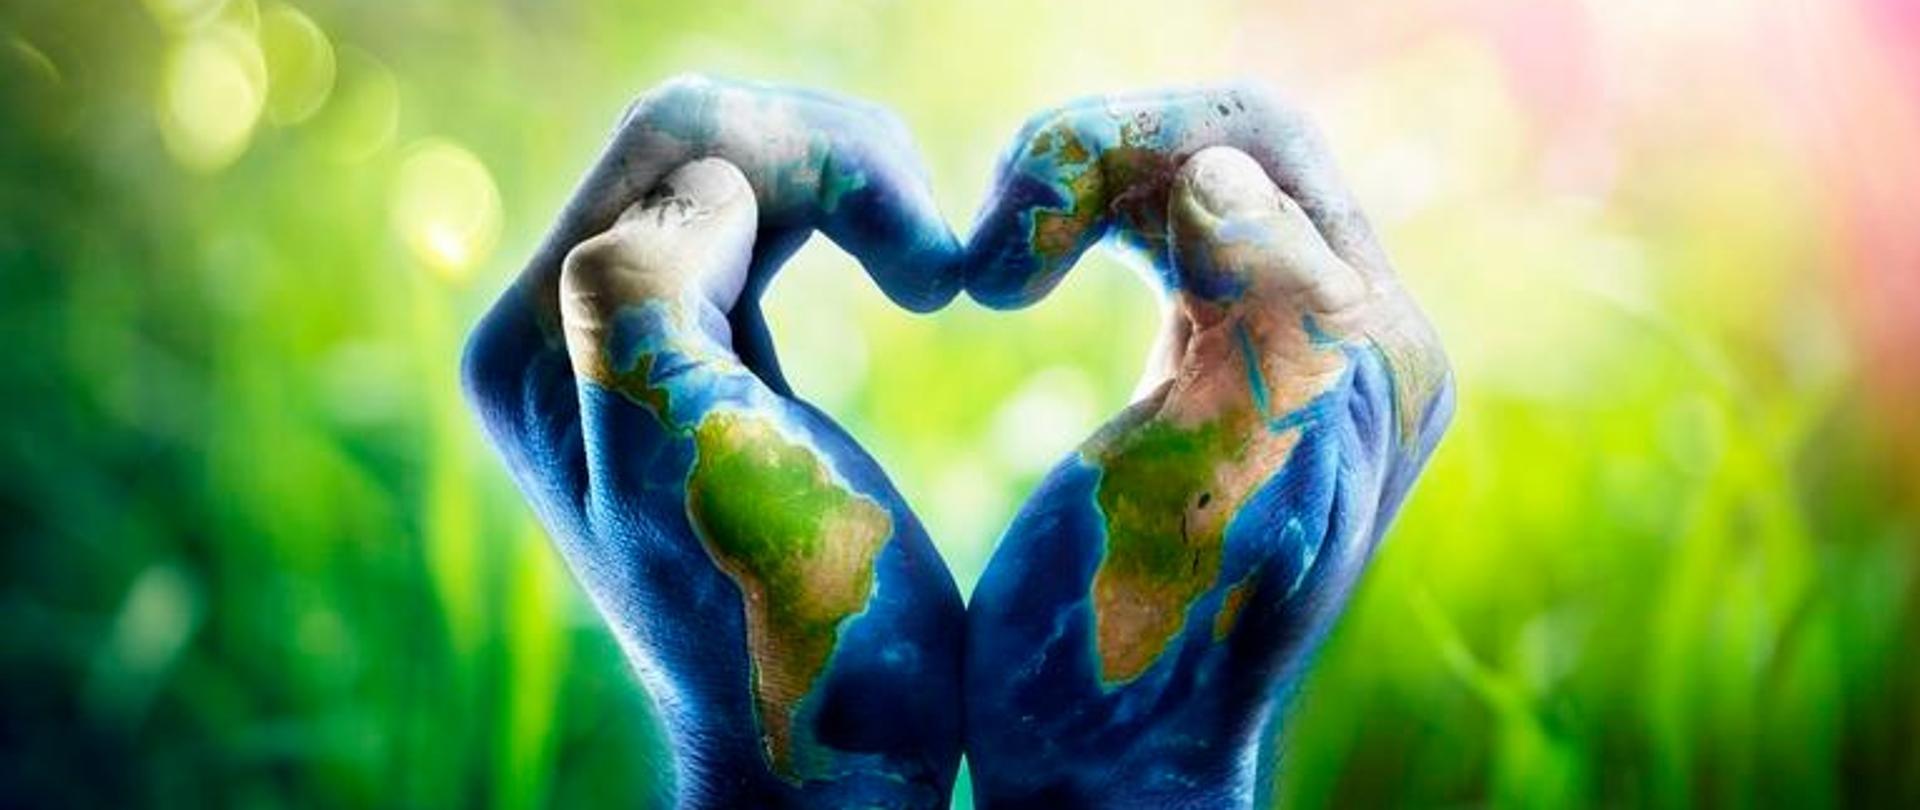 Ludzkie ręce kształtujące serce. Ręce są pomalowane, wzorzyste i przedstawiają mapę świata na tle z przewagą zieleni.